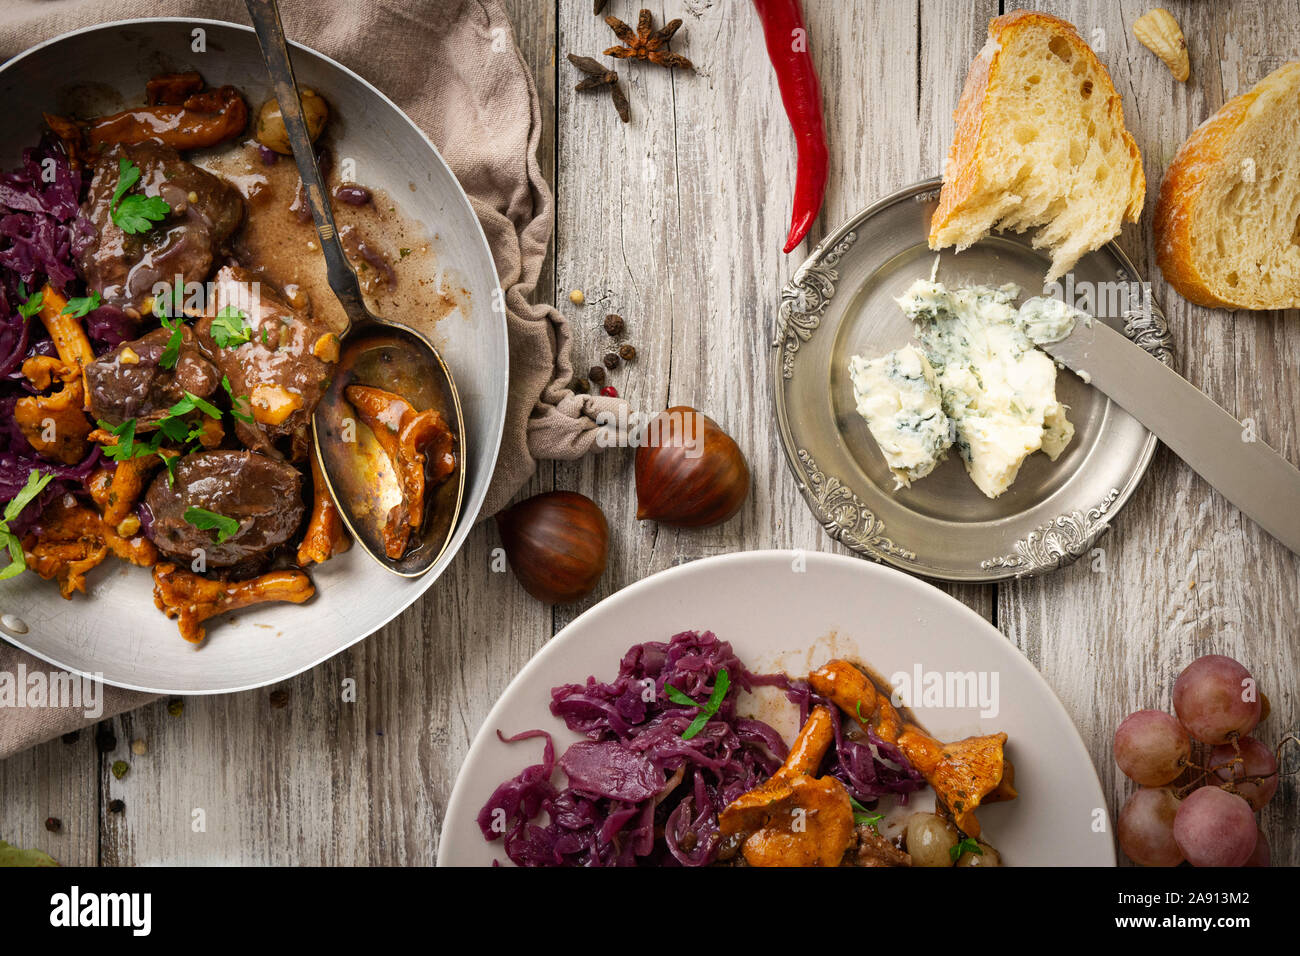 Piatto di carne di cervo sul vecchio tavolo in legno, con marmellata di frutta, formaggio e castagne, tradizionale piatto invernale con carne, bottino di caccia Foto Stock